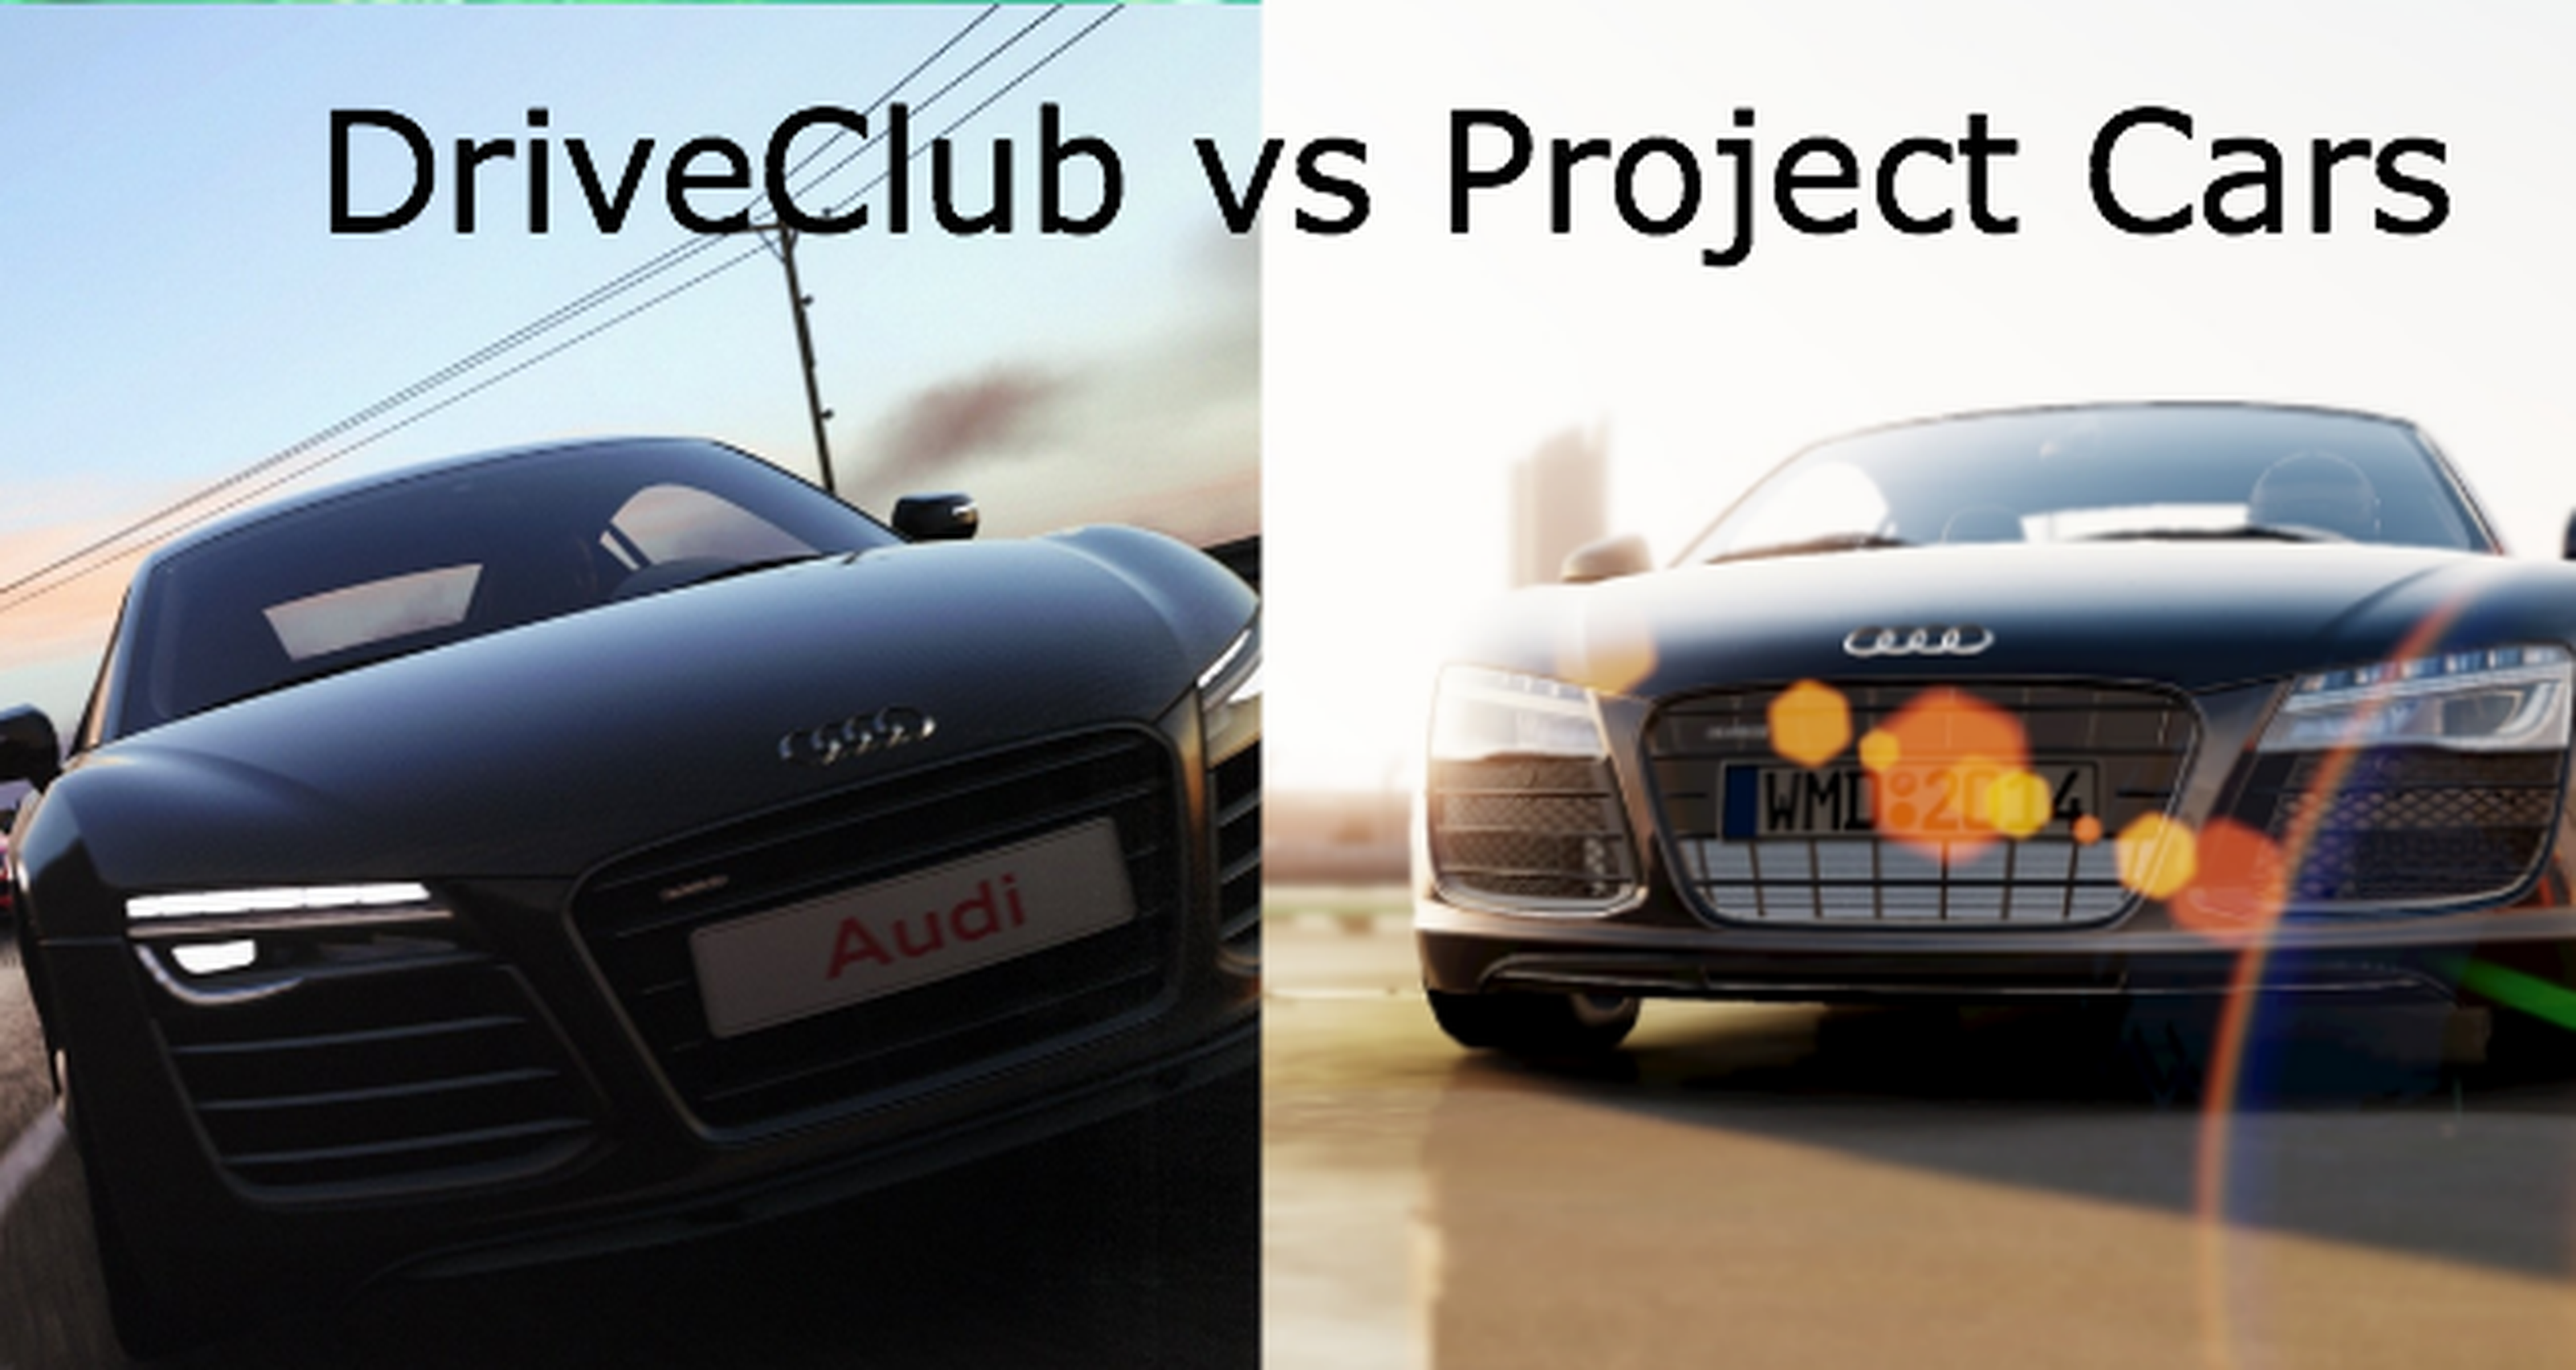 Comparación en imágenes de DriveClub vs Project Cars